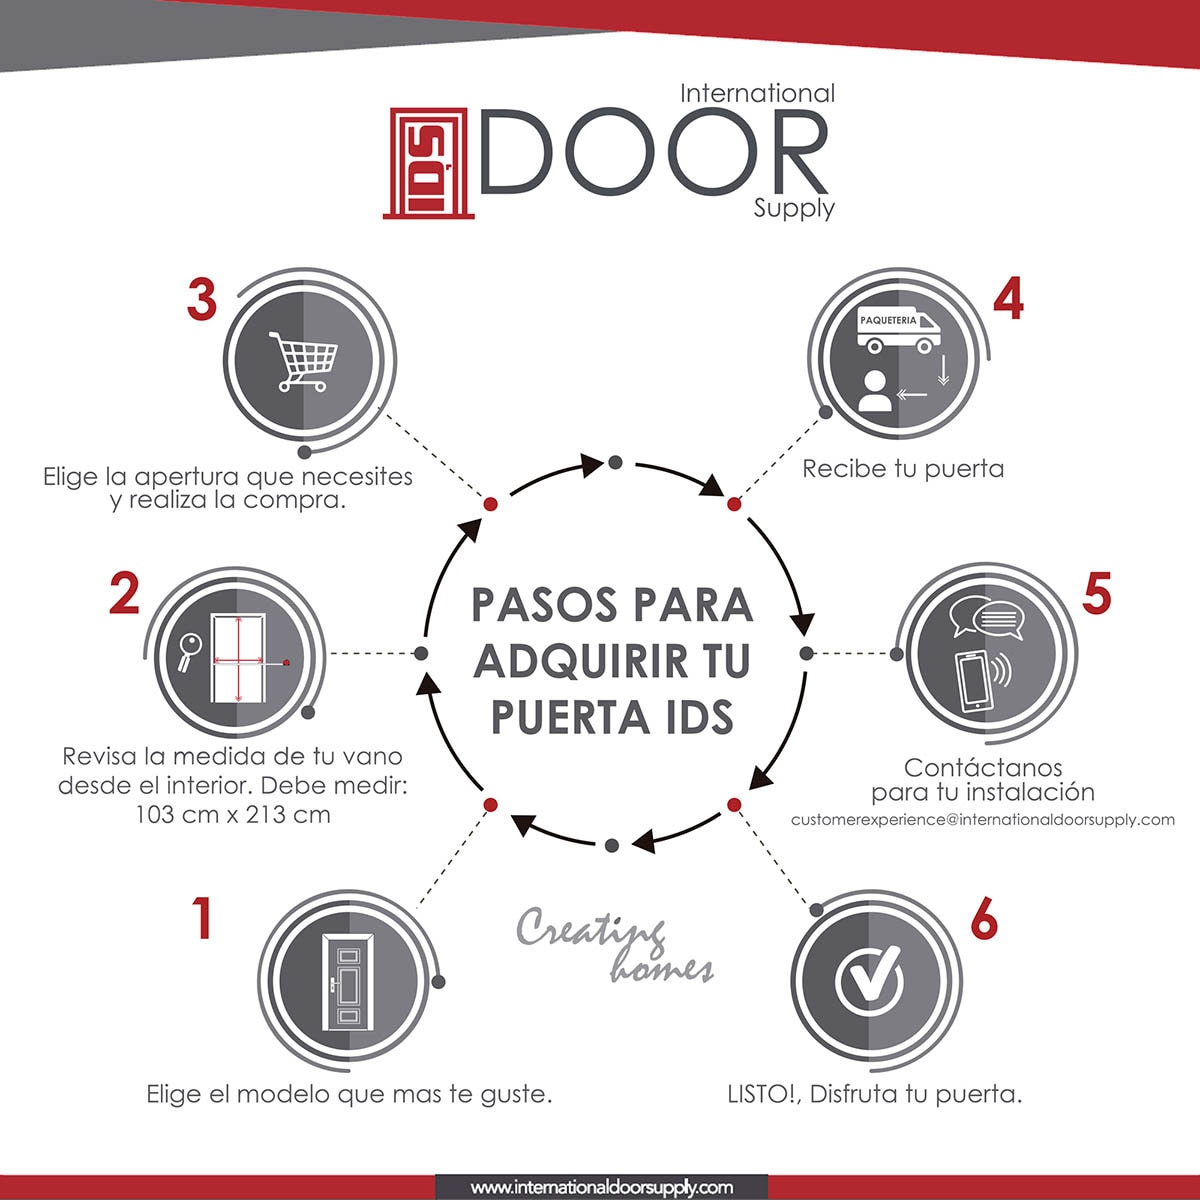 International Door Supply, Puerta de Alta Seguridad Santa Lucia Izquierda